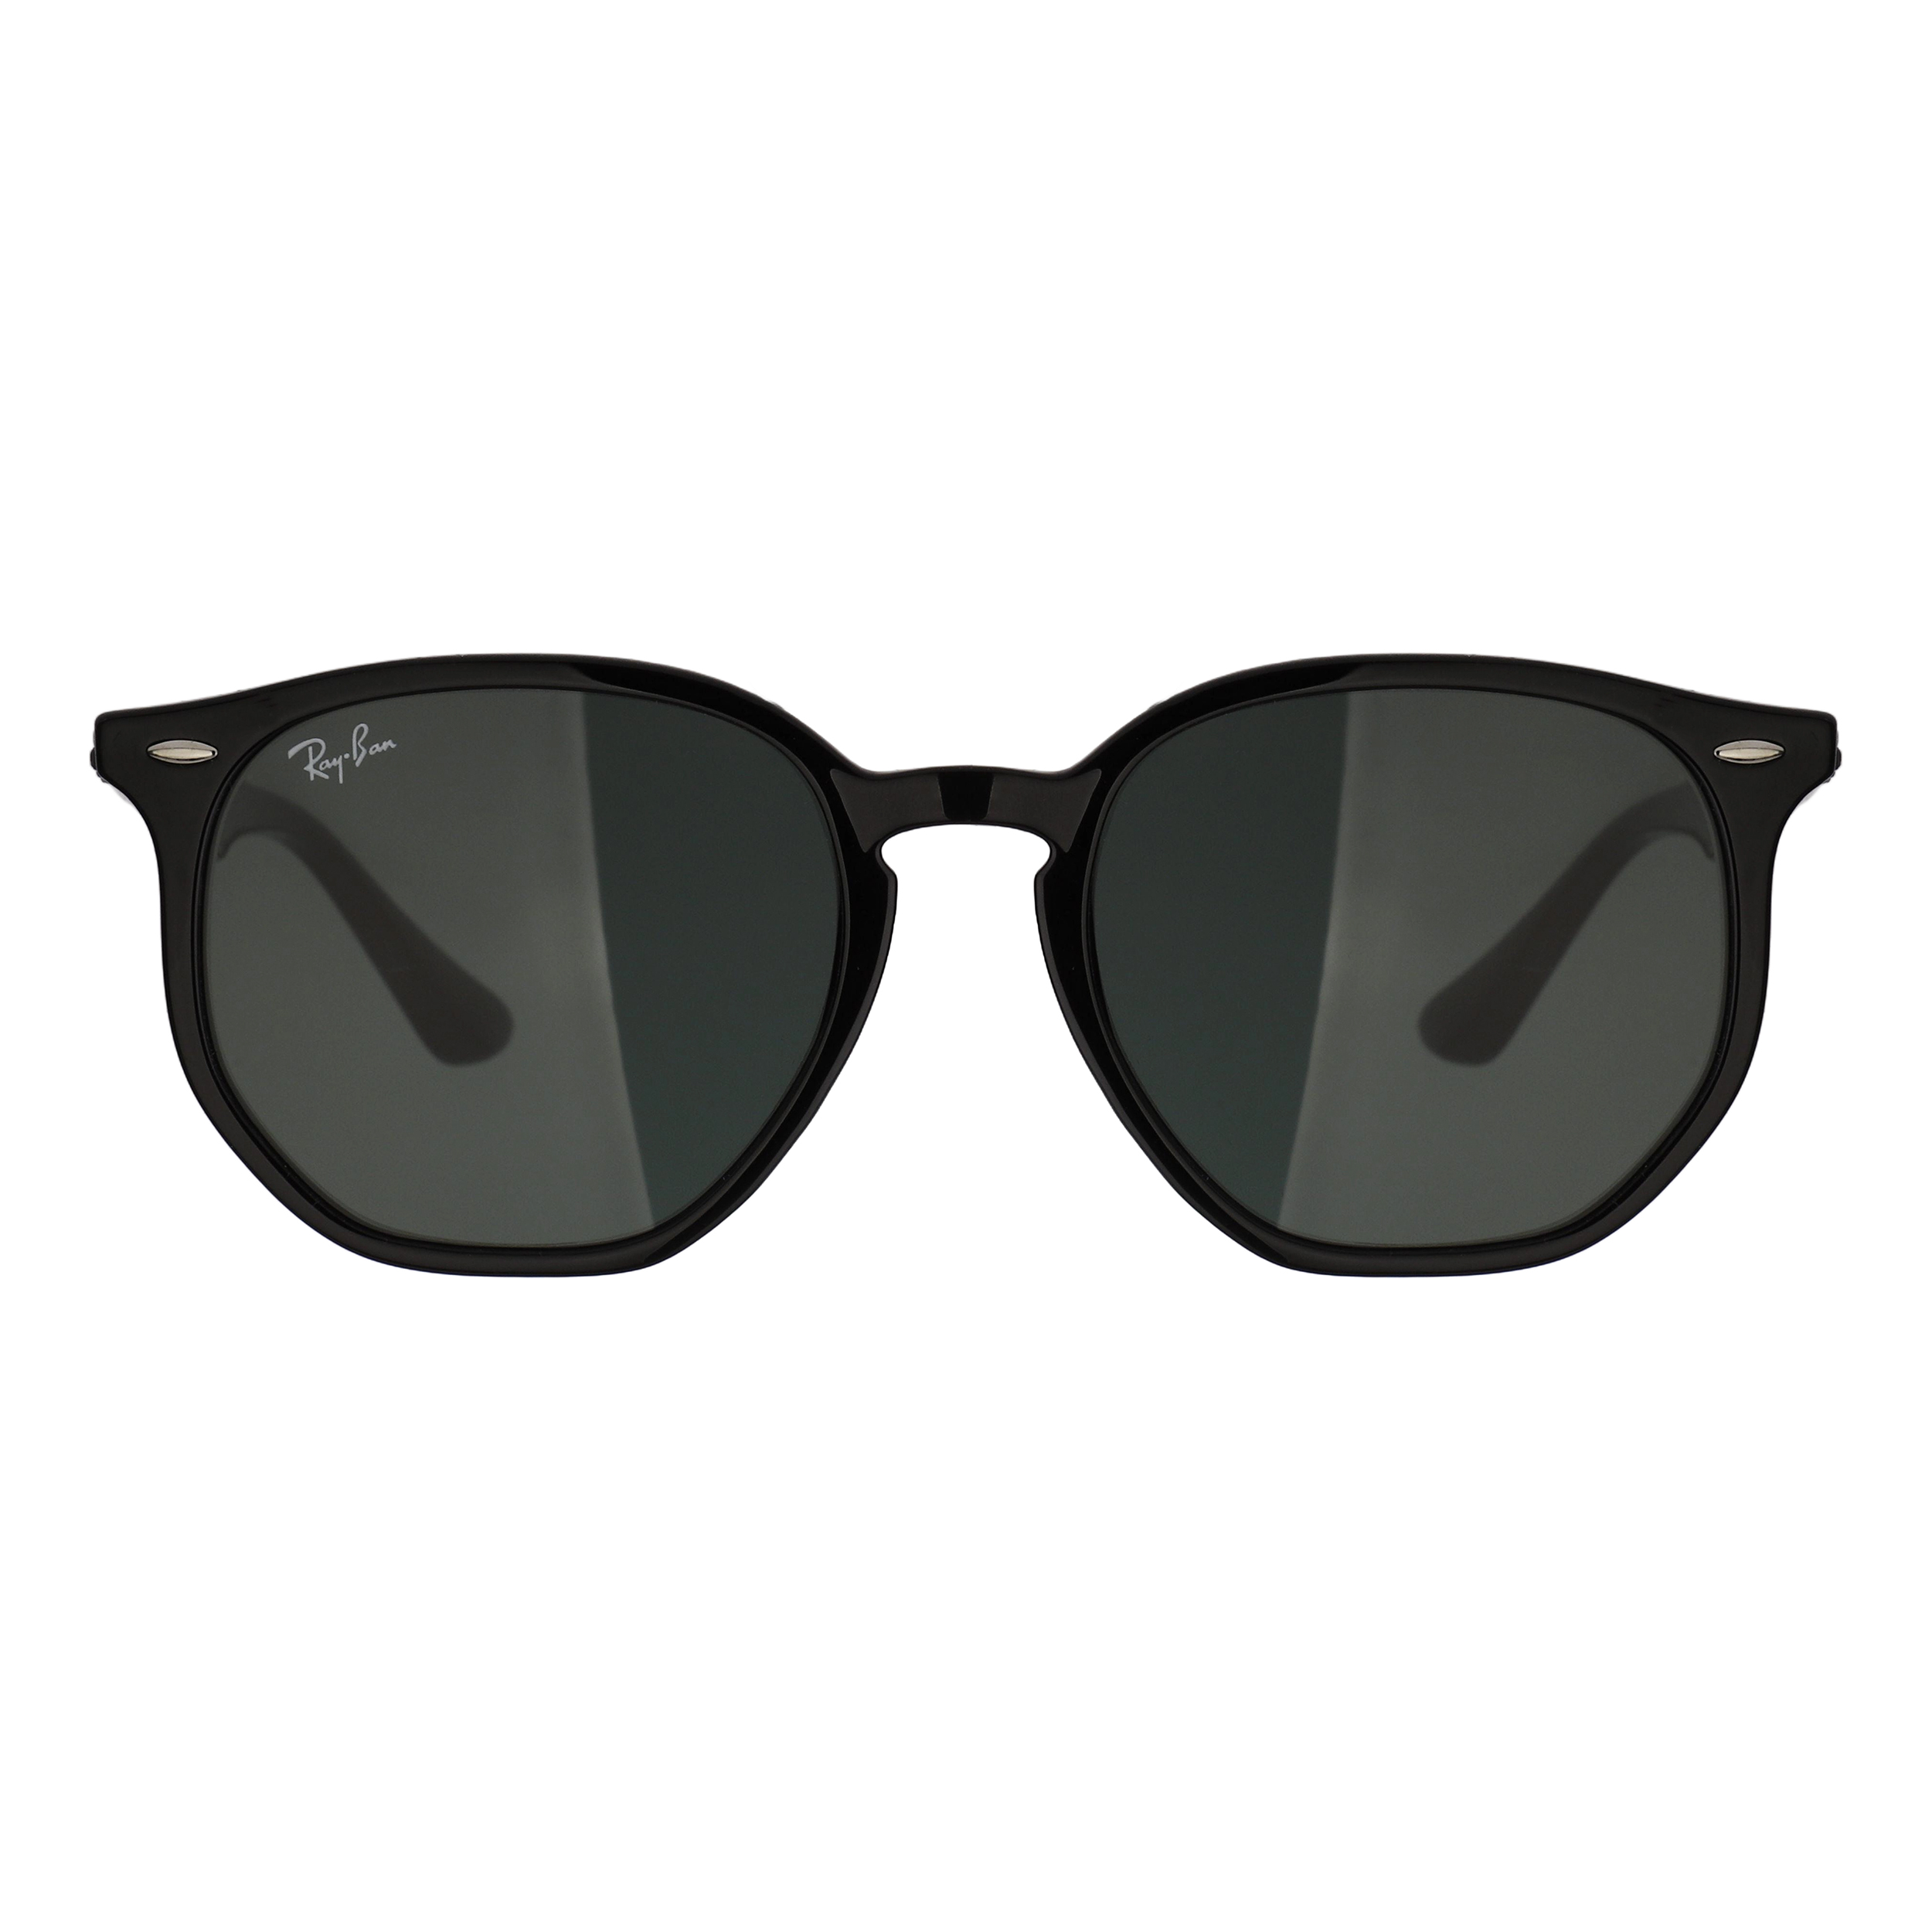 عینک آفتابی ری بن مدل 4306-601/71